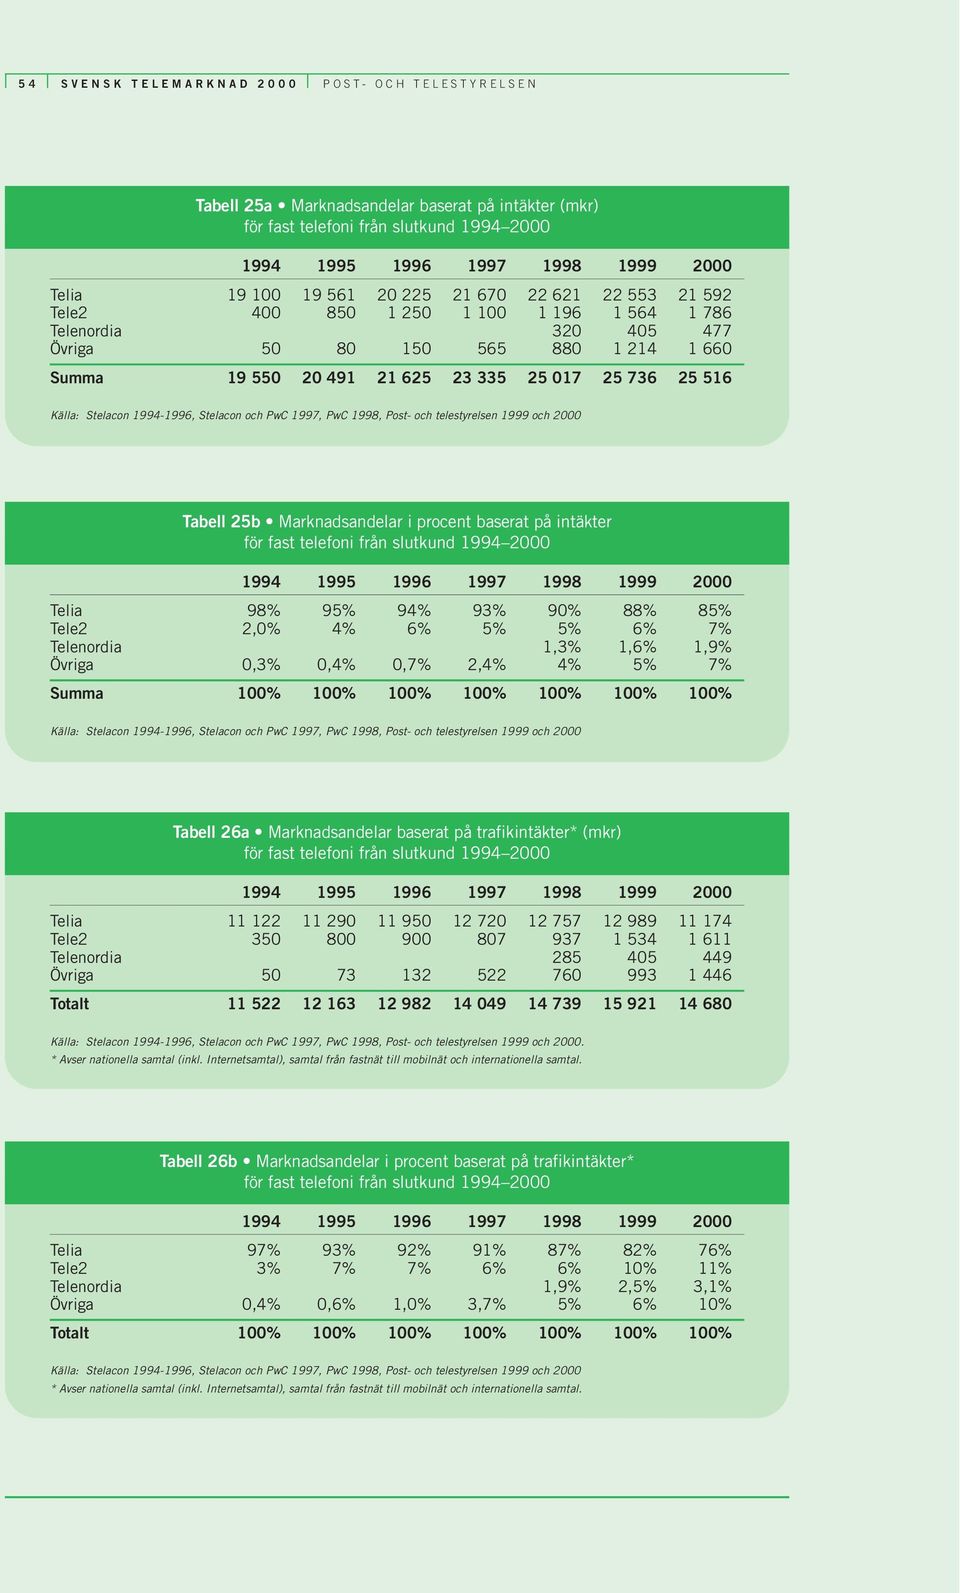 baserat på intäkter för fast telefoni från slutkund 1994 2000 Telia 98% 95% 94% 93% 90% 88% 85% Tele2 2,0% 4% 6% 5% 5% 6% 7% Telenordia 1,3% 1,6% 1,9% Övriga 0,3% 0,4% 0,7% 2,4% 4% 5% 7% Summa 100%